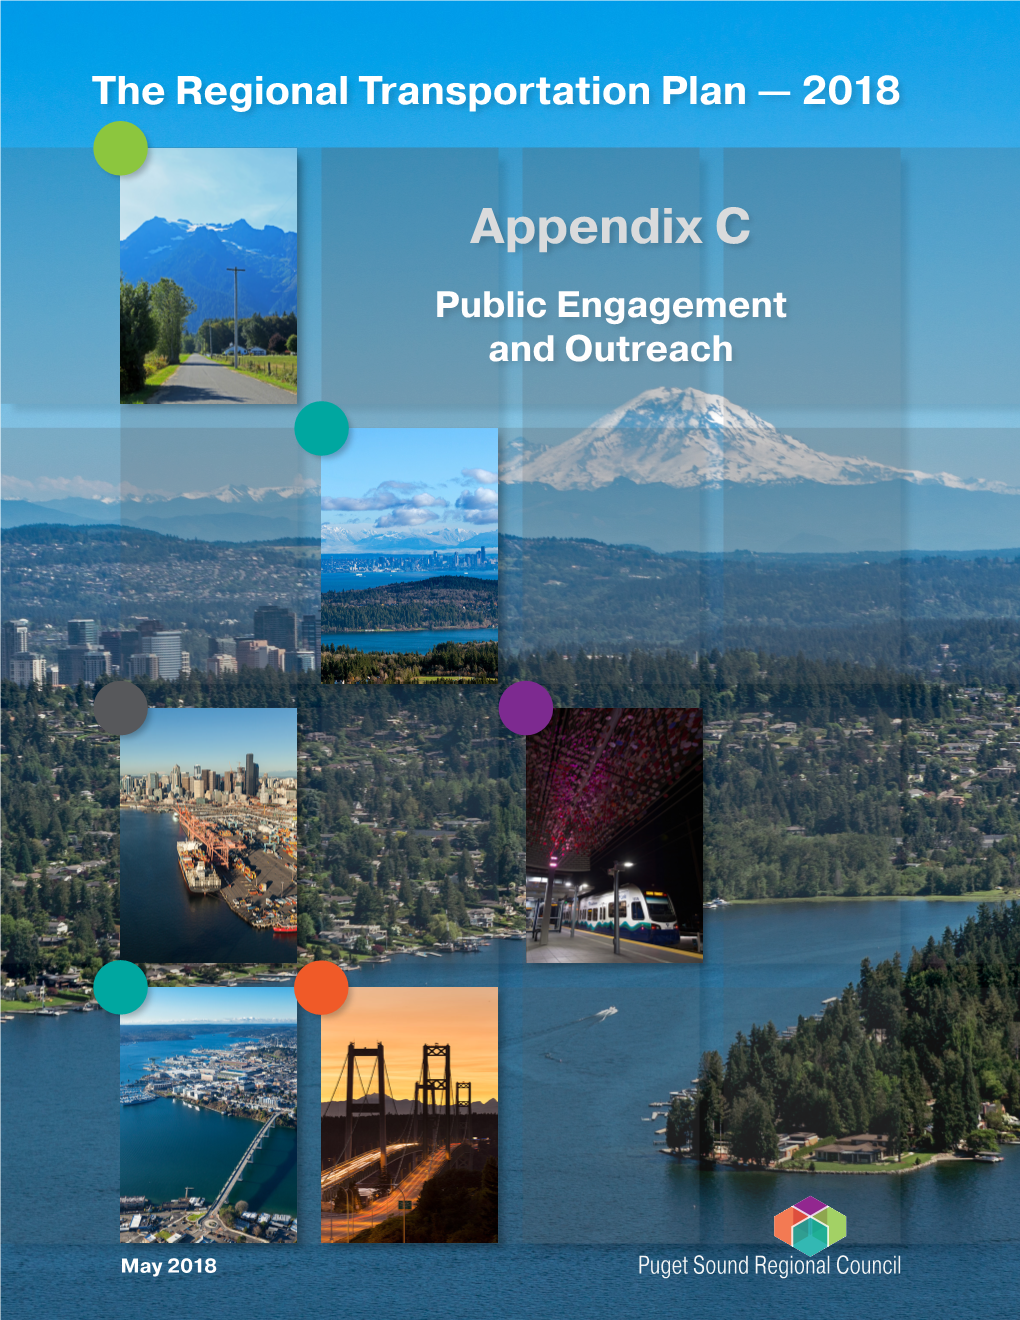 Appendix C: Public Engagement and Outreach